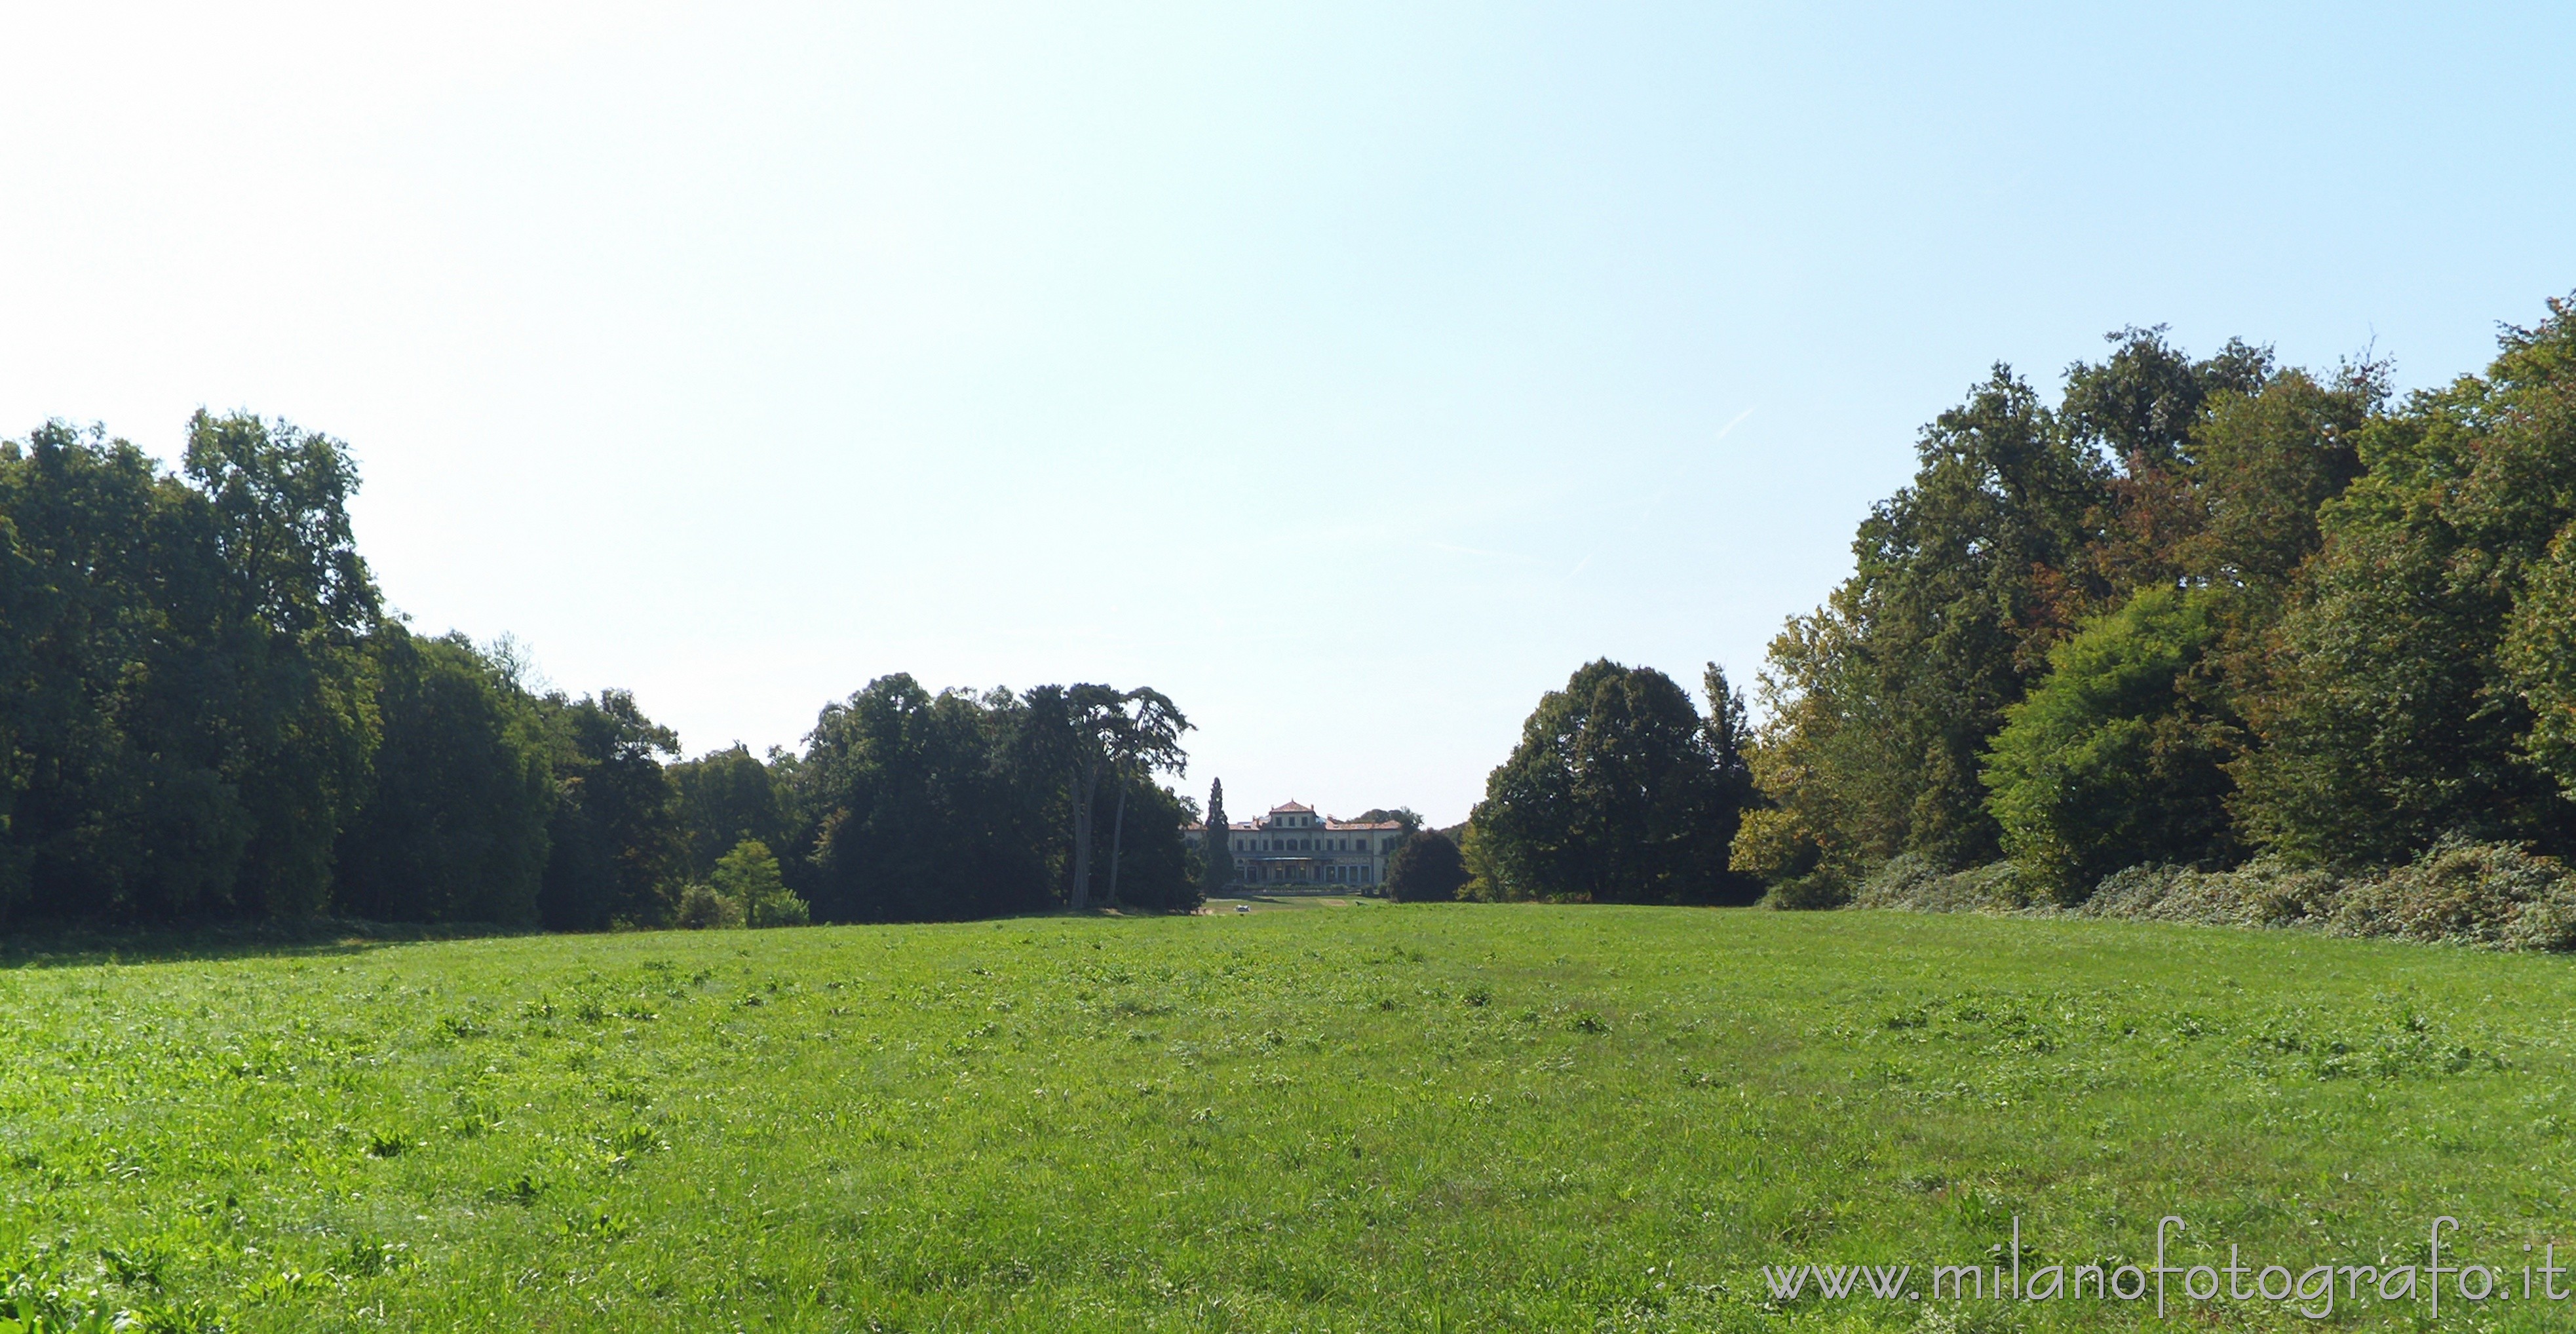 Arcore (Monza e Brianza): Il prato a centro del parco di Villa Borromeo d'Adda - Arcore (Monza e Brianza)